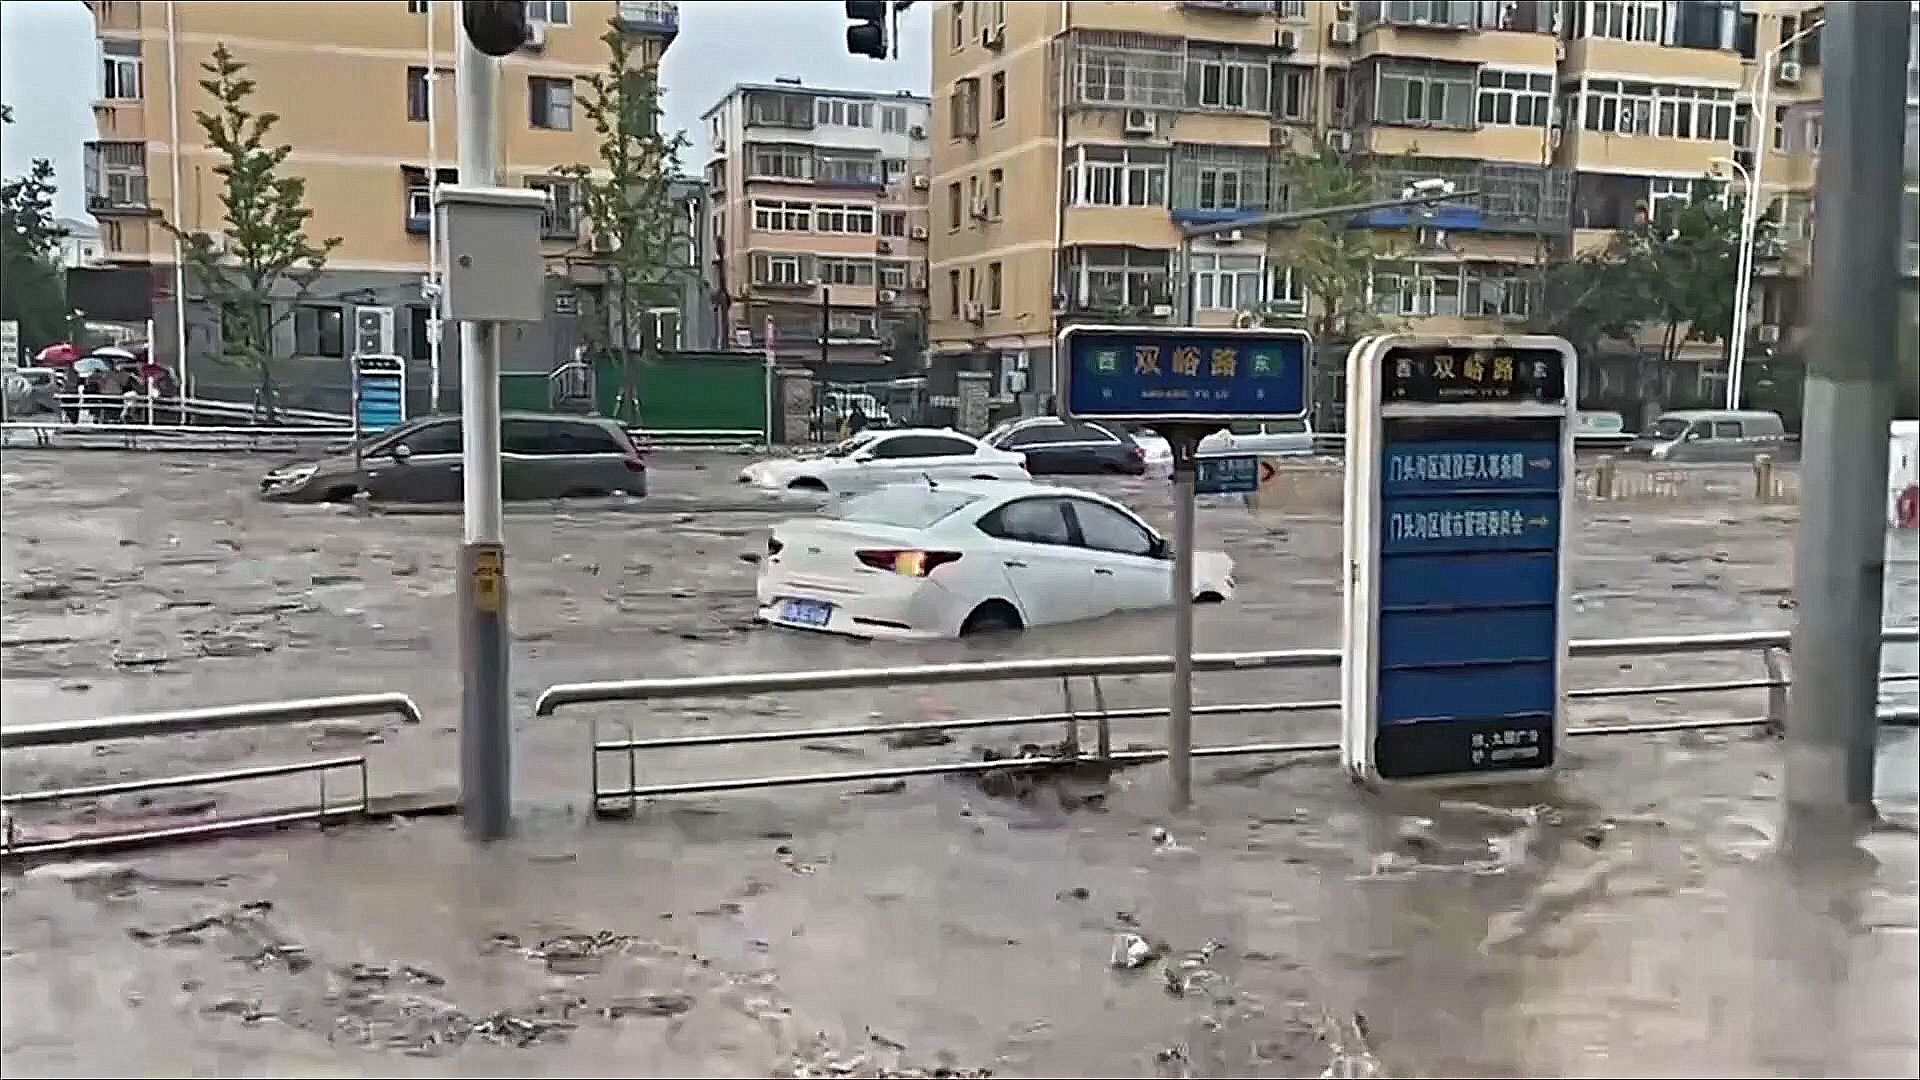 Китайские «города-губки» не сработали во время сильных ливней